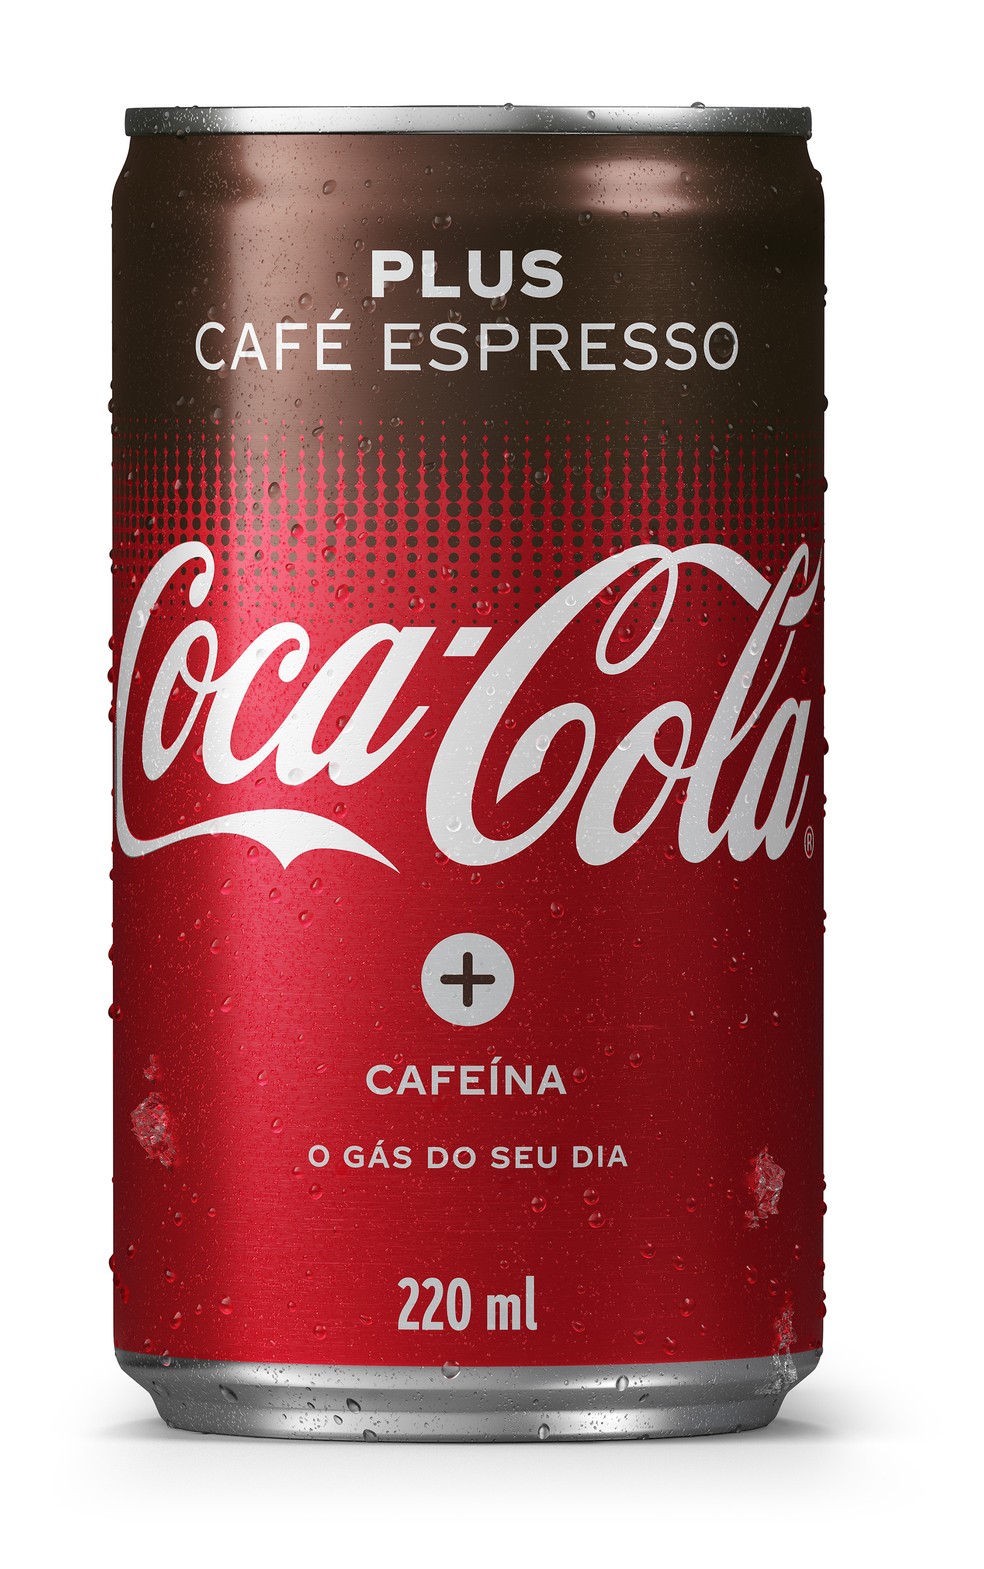 Coca-Cola lança versão com sabor de café no Brasil | Midia ...